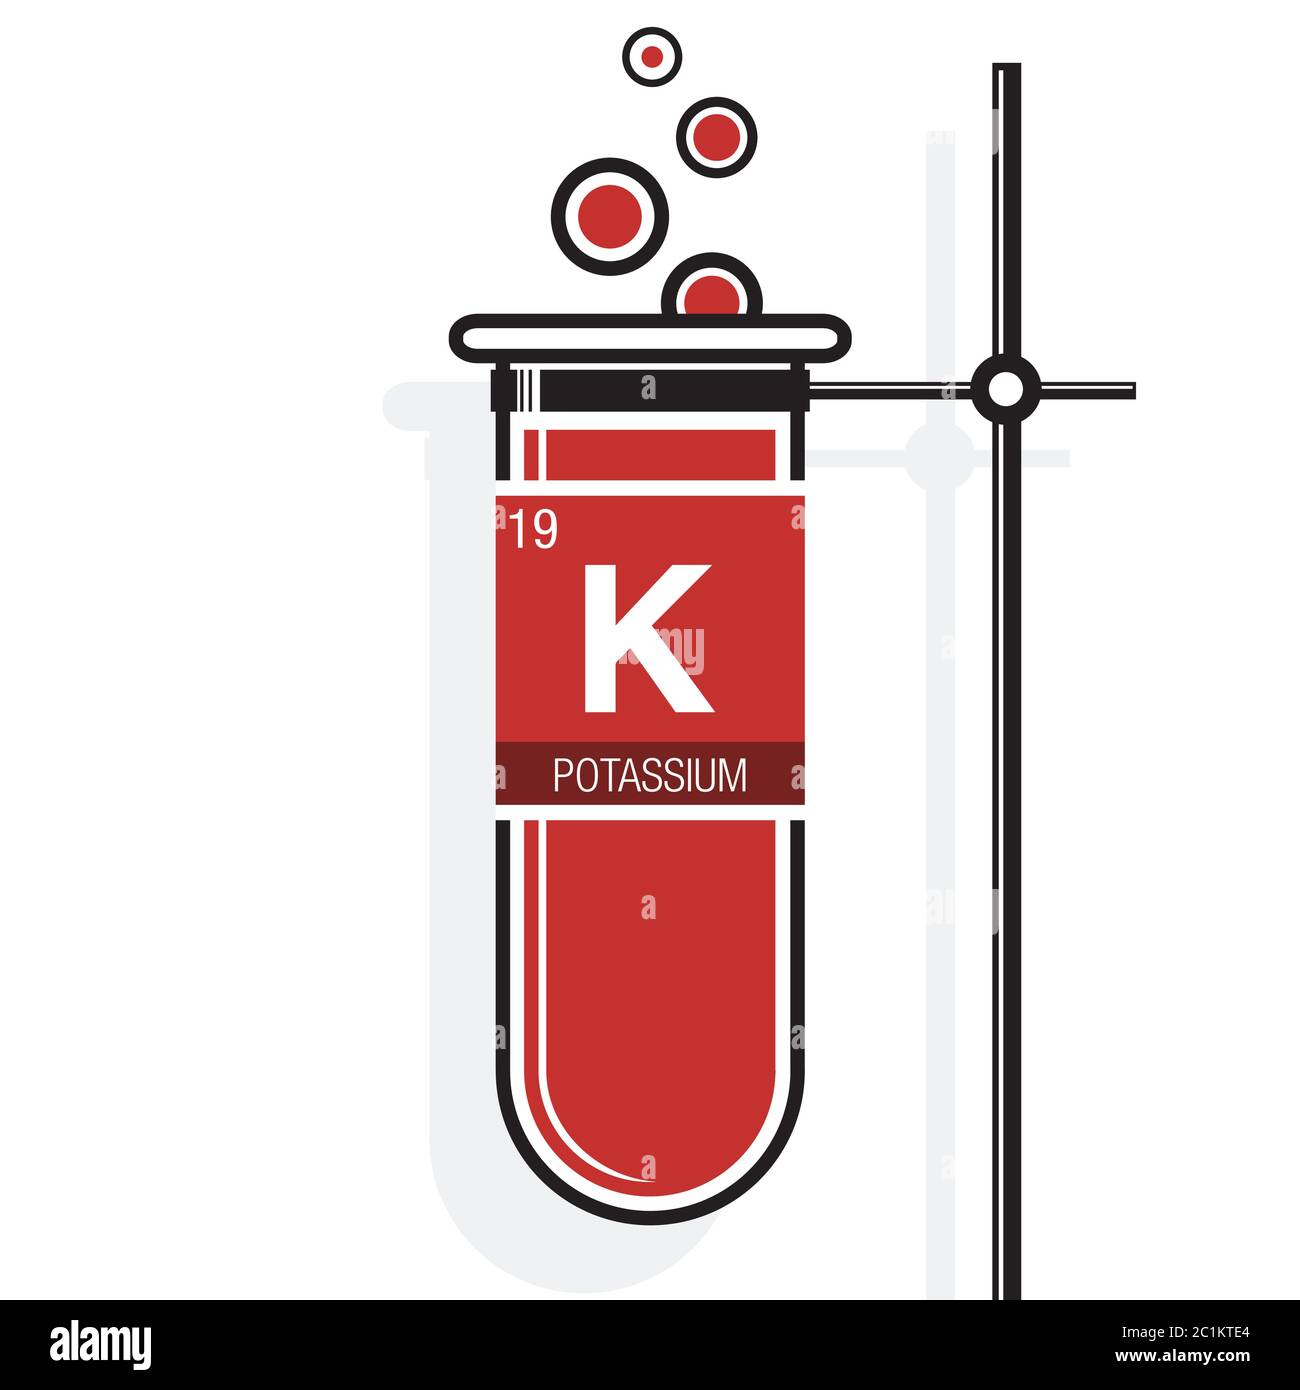 Symbole de potassium sur l'étiquette dans un tube à essai rouge avec  support. Élément numéro 19 du tableau périodique des éléments - Chimie  Image Vectorielle Stock - Alamy